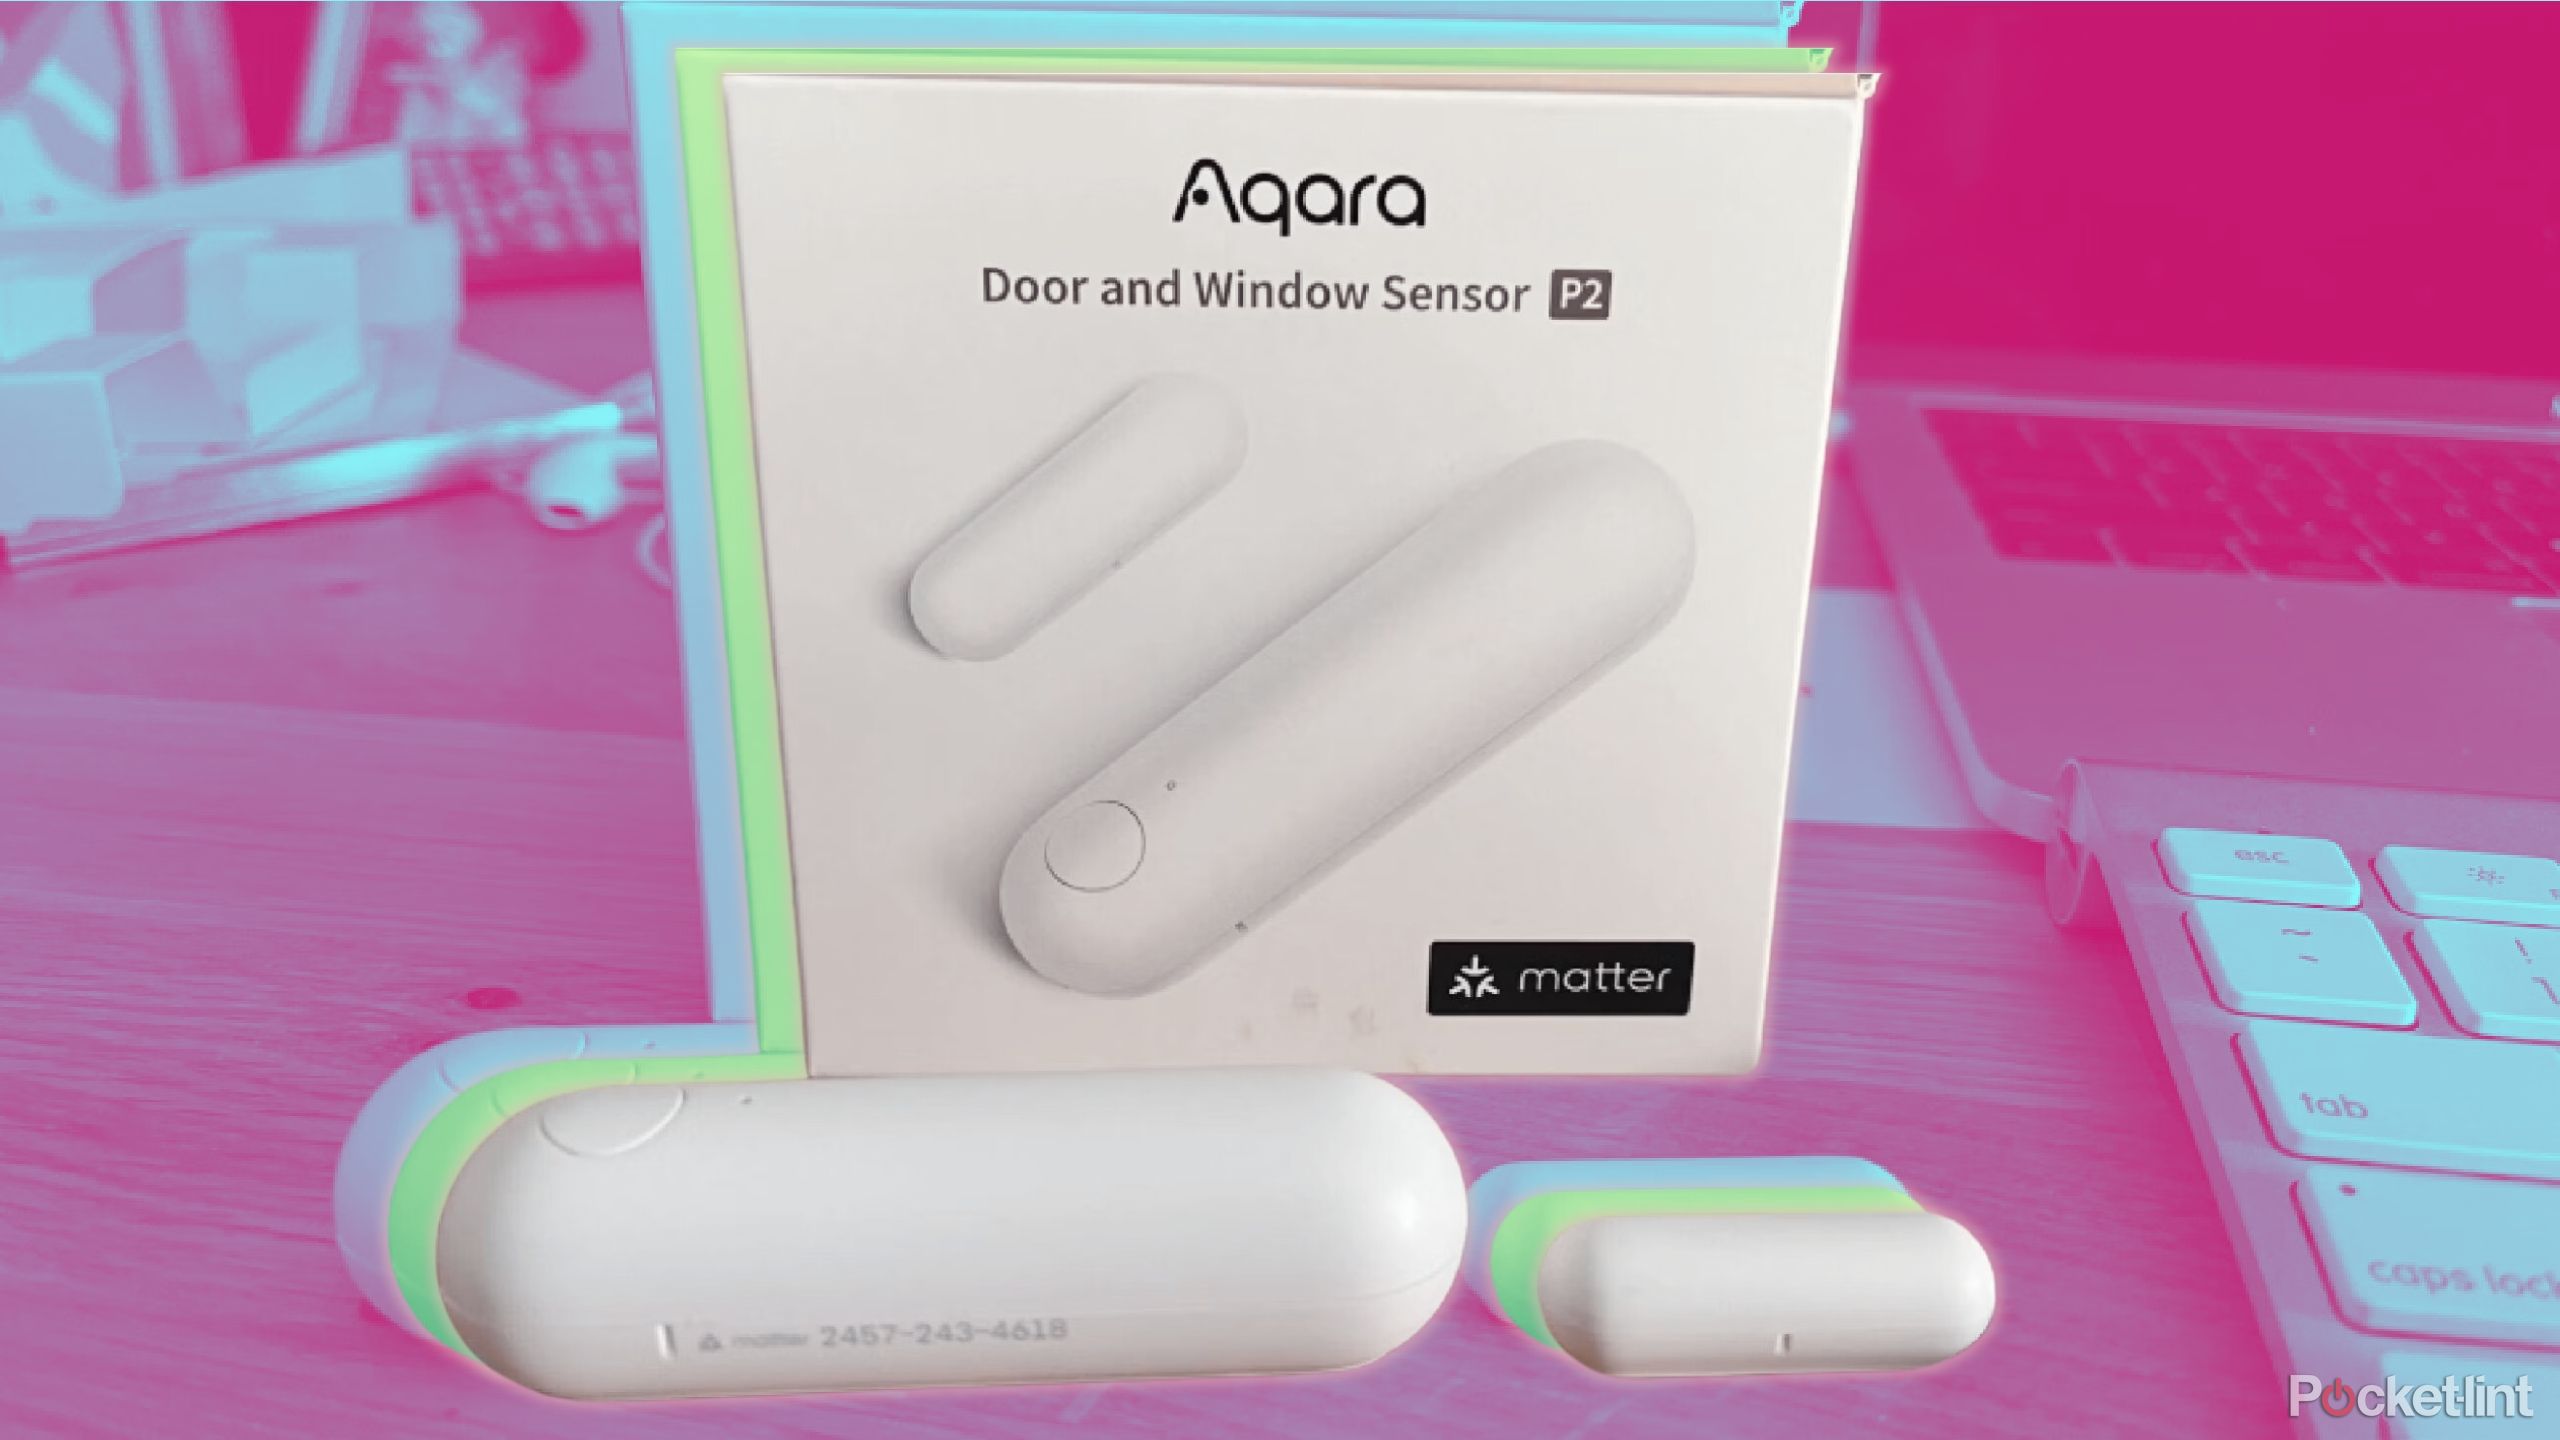 Aqara Door and Window Sensor P2 review: Simple yet effective